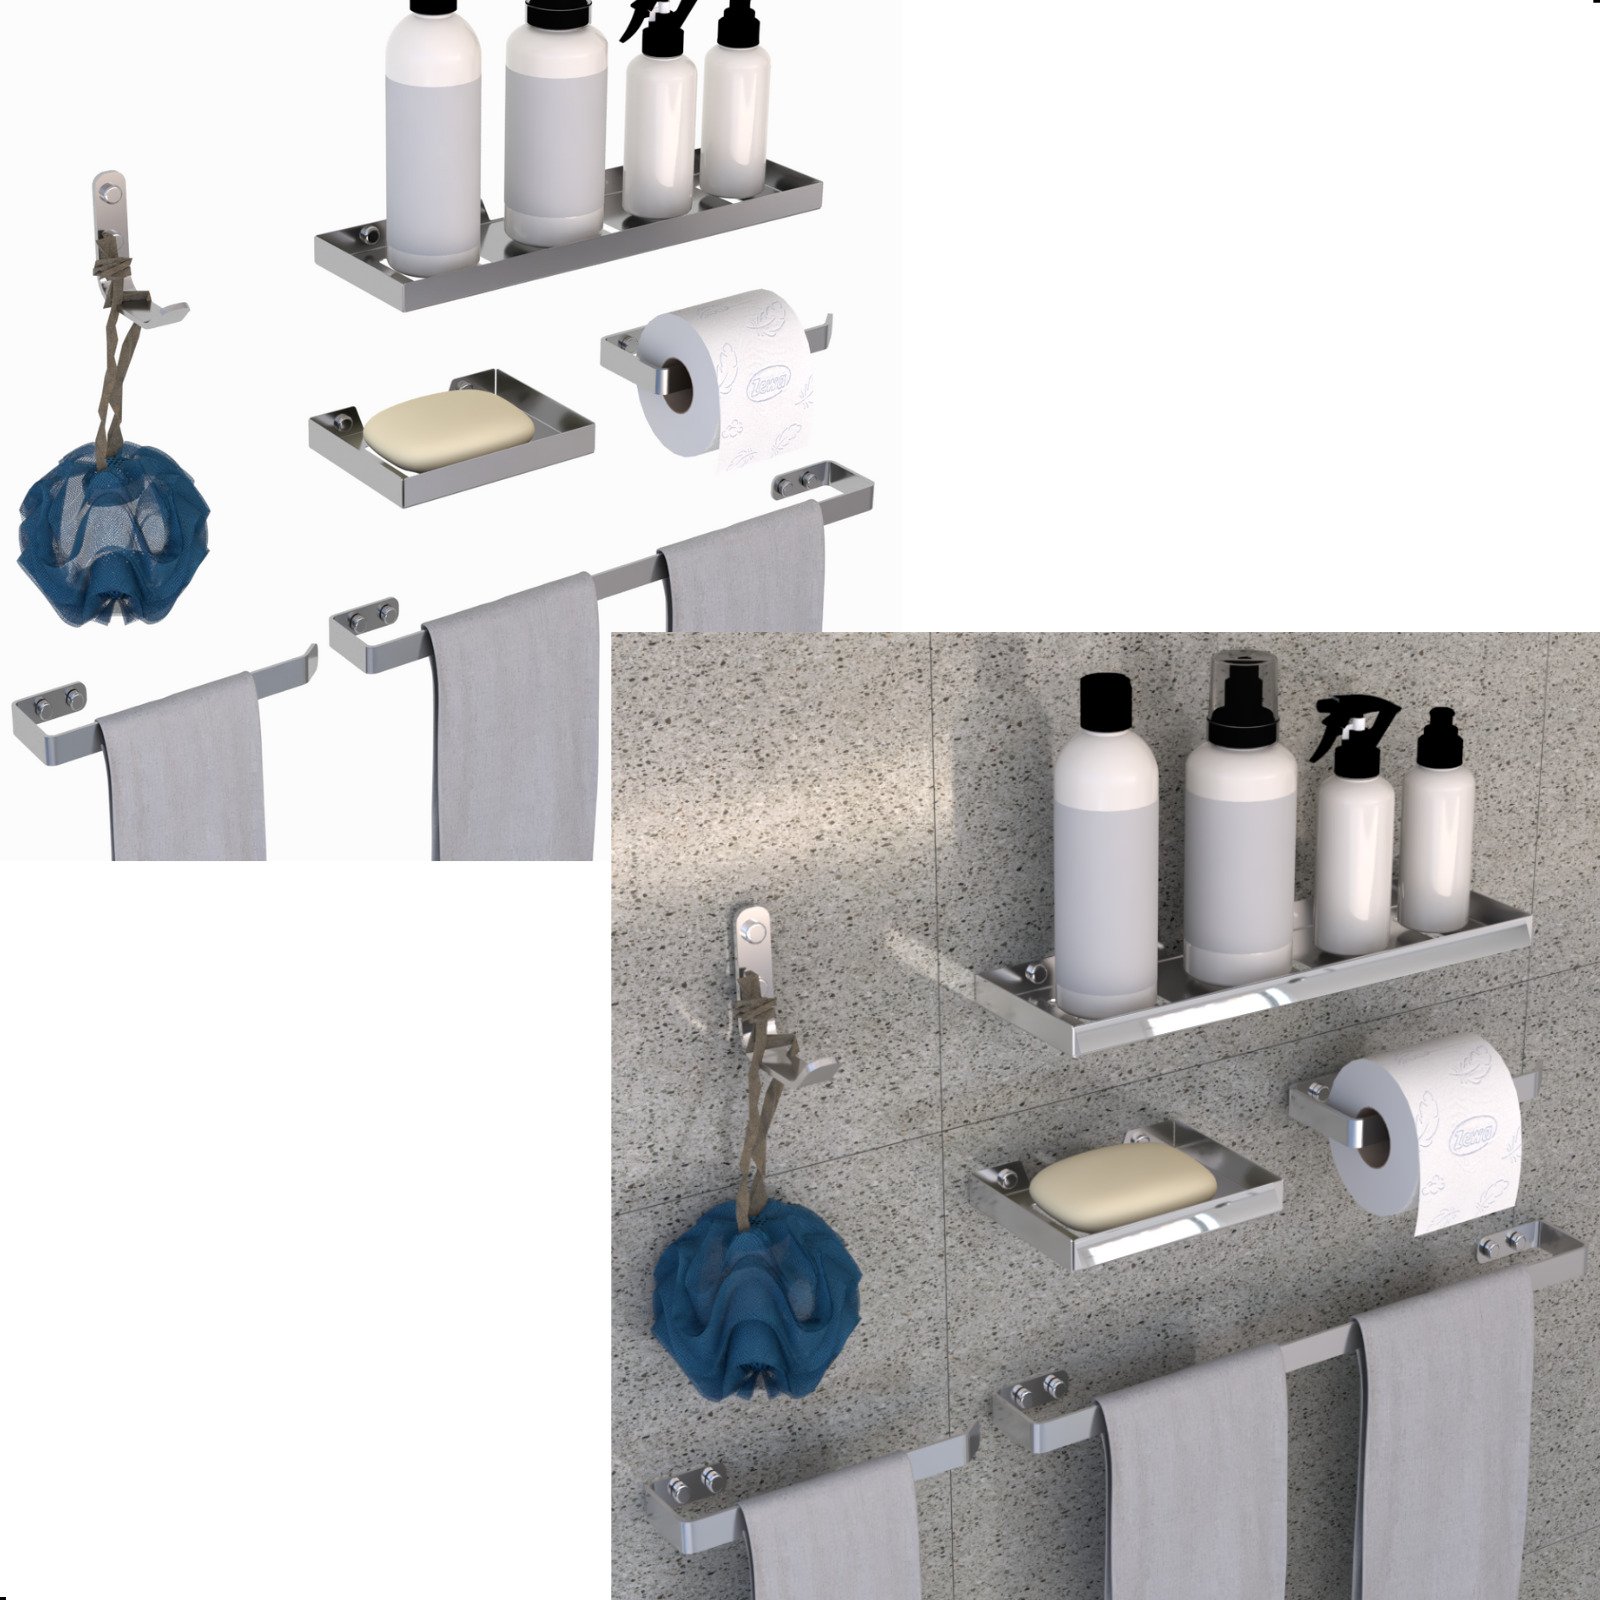 Kit Acessórios Banheiro 6 Peças Luxo Quadrado:cromado - 2